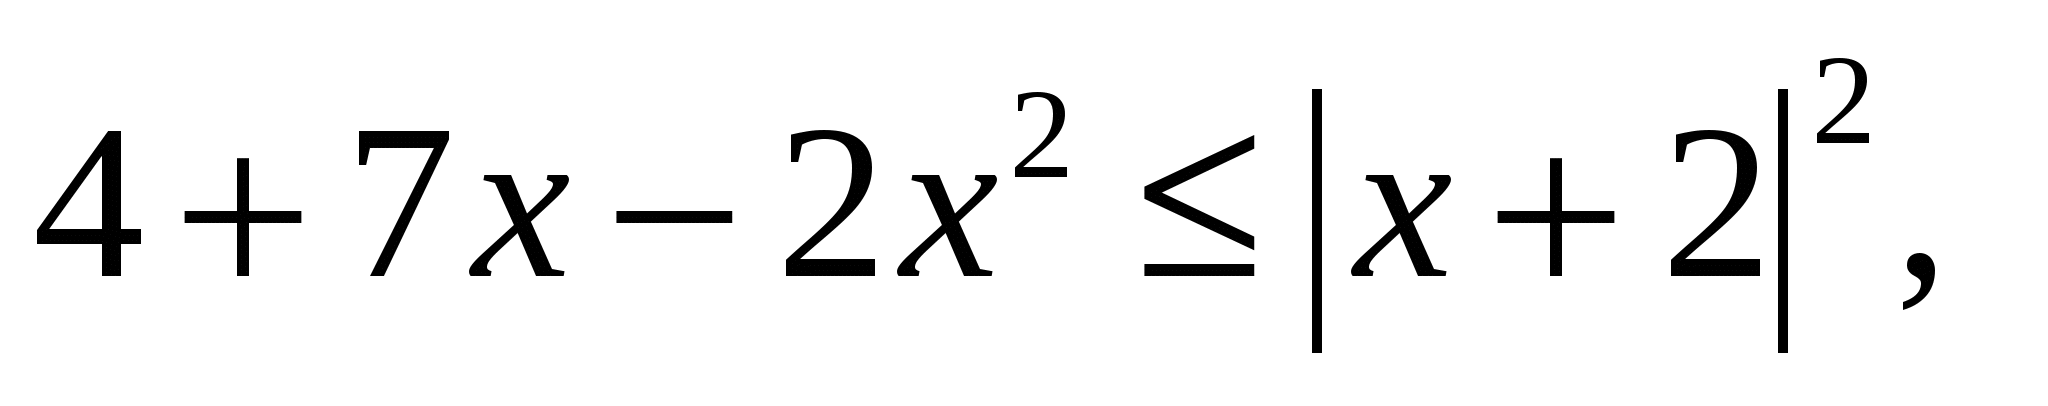 Решение неравенств из второй части КИМа ЕГЭ по математике 11 класс